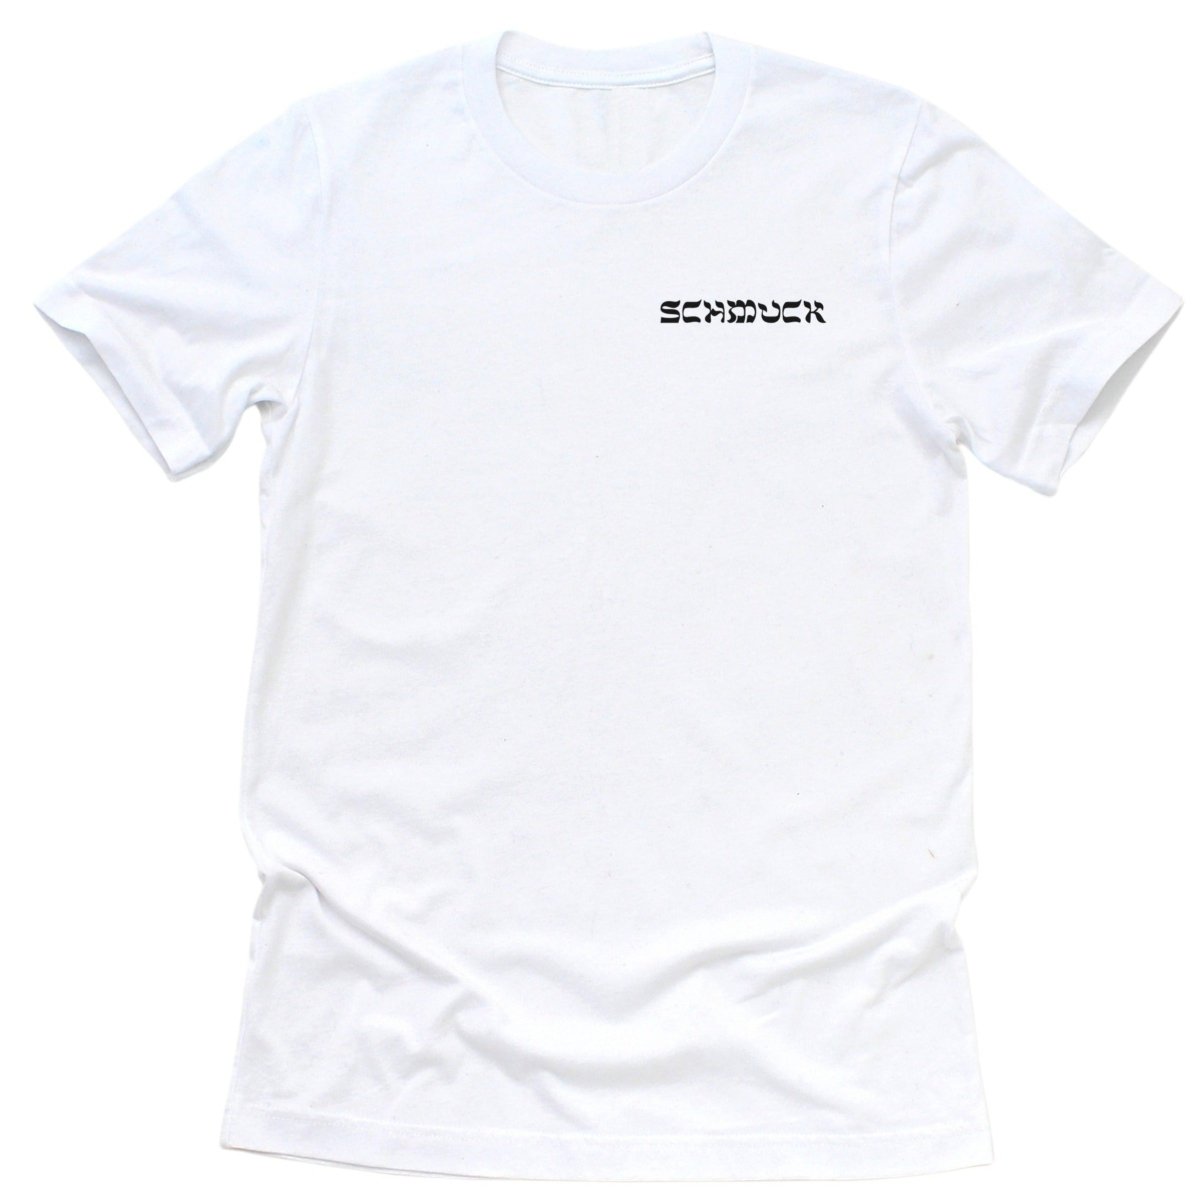 'Schmuck' T-Shirt - T-Shirts - Meshugge